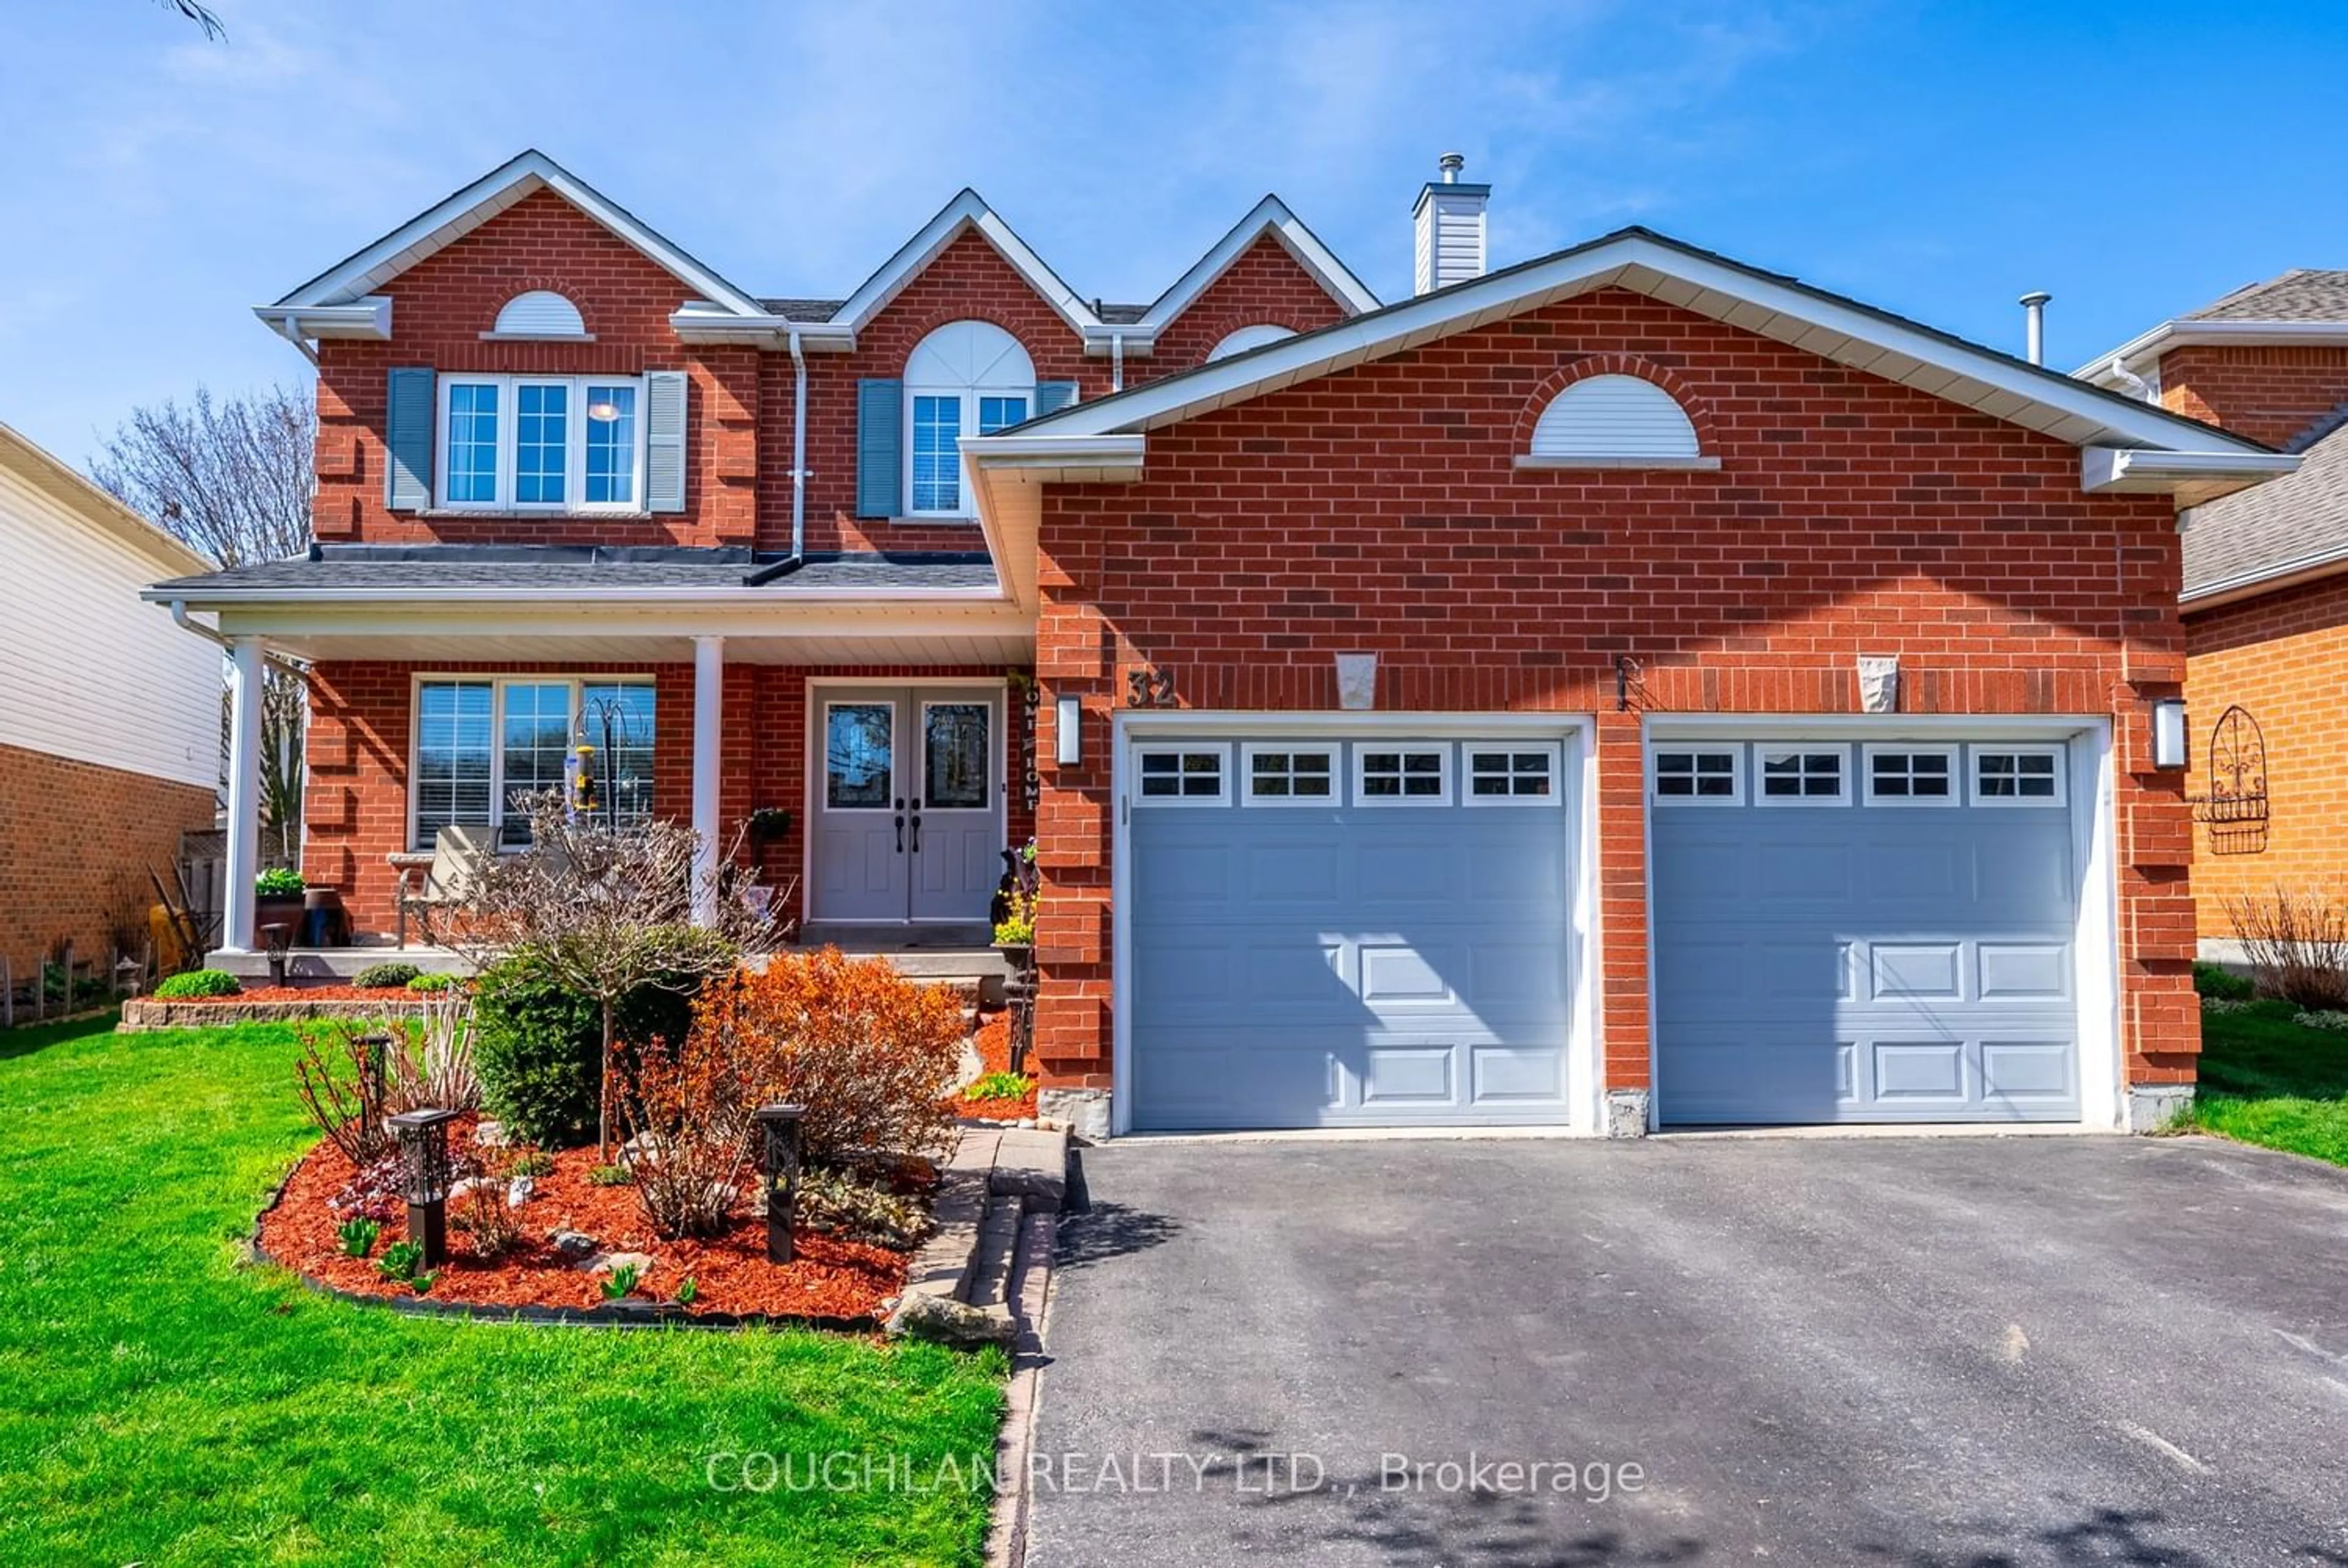 Home with brick exterior material for 32 Living Crt, Clarington Ontario L1E 2V6